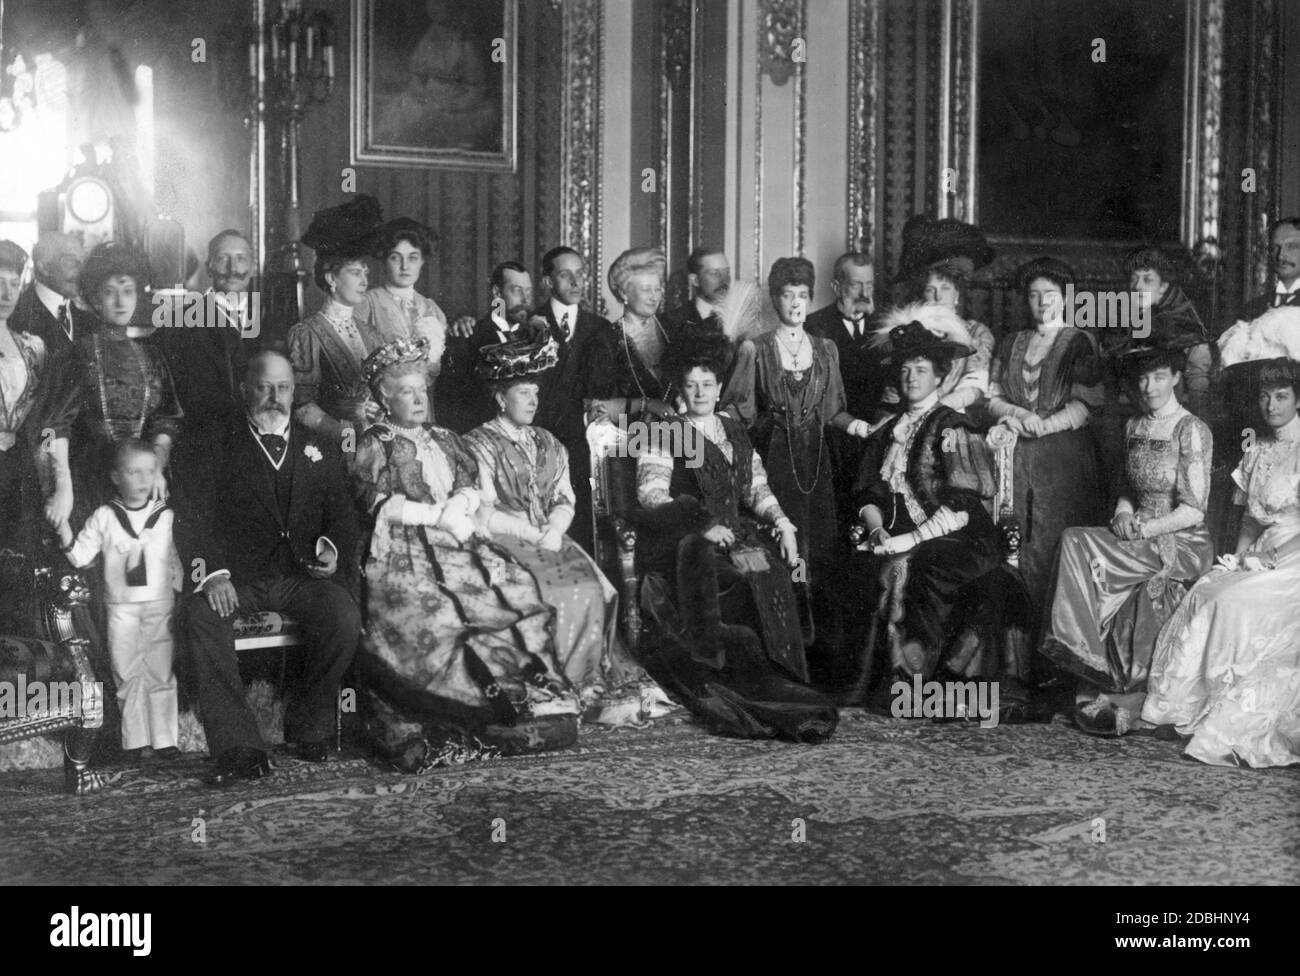 Foto di gruppo della famiglia reale inglese con ospiti reali internazionali al Castello di Windsor, nel Galles nel 1907. In basso a sinistra: Il Principe OLAF di Norvegia, il Re Edoardo VII di Gran Bretagna, l'Infanta Isabella di Spagna, la Principessa Beatrice di Battenberg, la Granduchessa Maria di Russia, la Regina Amelie di Portogallo, la Duchessa Elena di Aosta, la Principessa Maria Immacolata di Sassonia. Seconda fila: Duchessa Louise di Fife, Duca Artù di Connaught, Regina Maud di Norvegia, Imperatore Guglielmo II, Maria Principessa di Galles (in seguito Regina Maria d'Inghilterra), Principessa Patricia di Connaught, Giorgio Principe di Galles (in seguito Giorgio V), Foto Stock